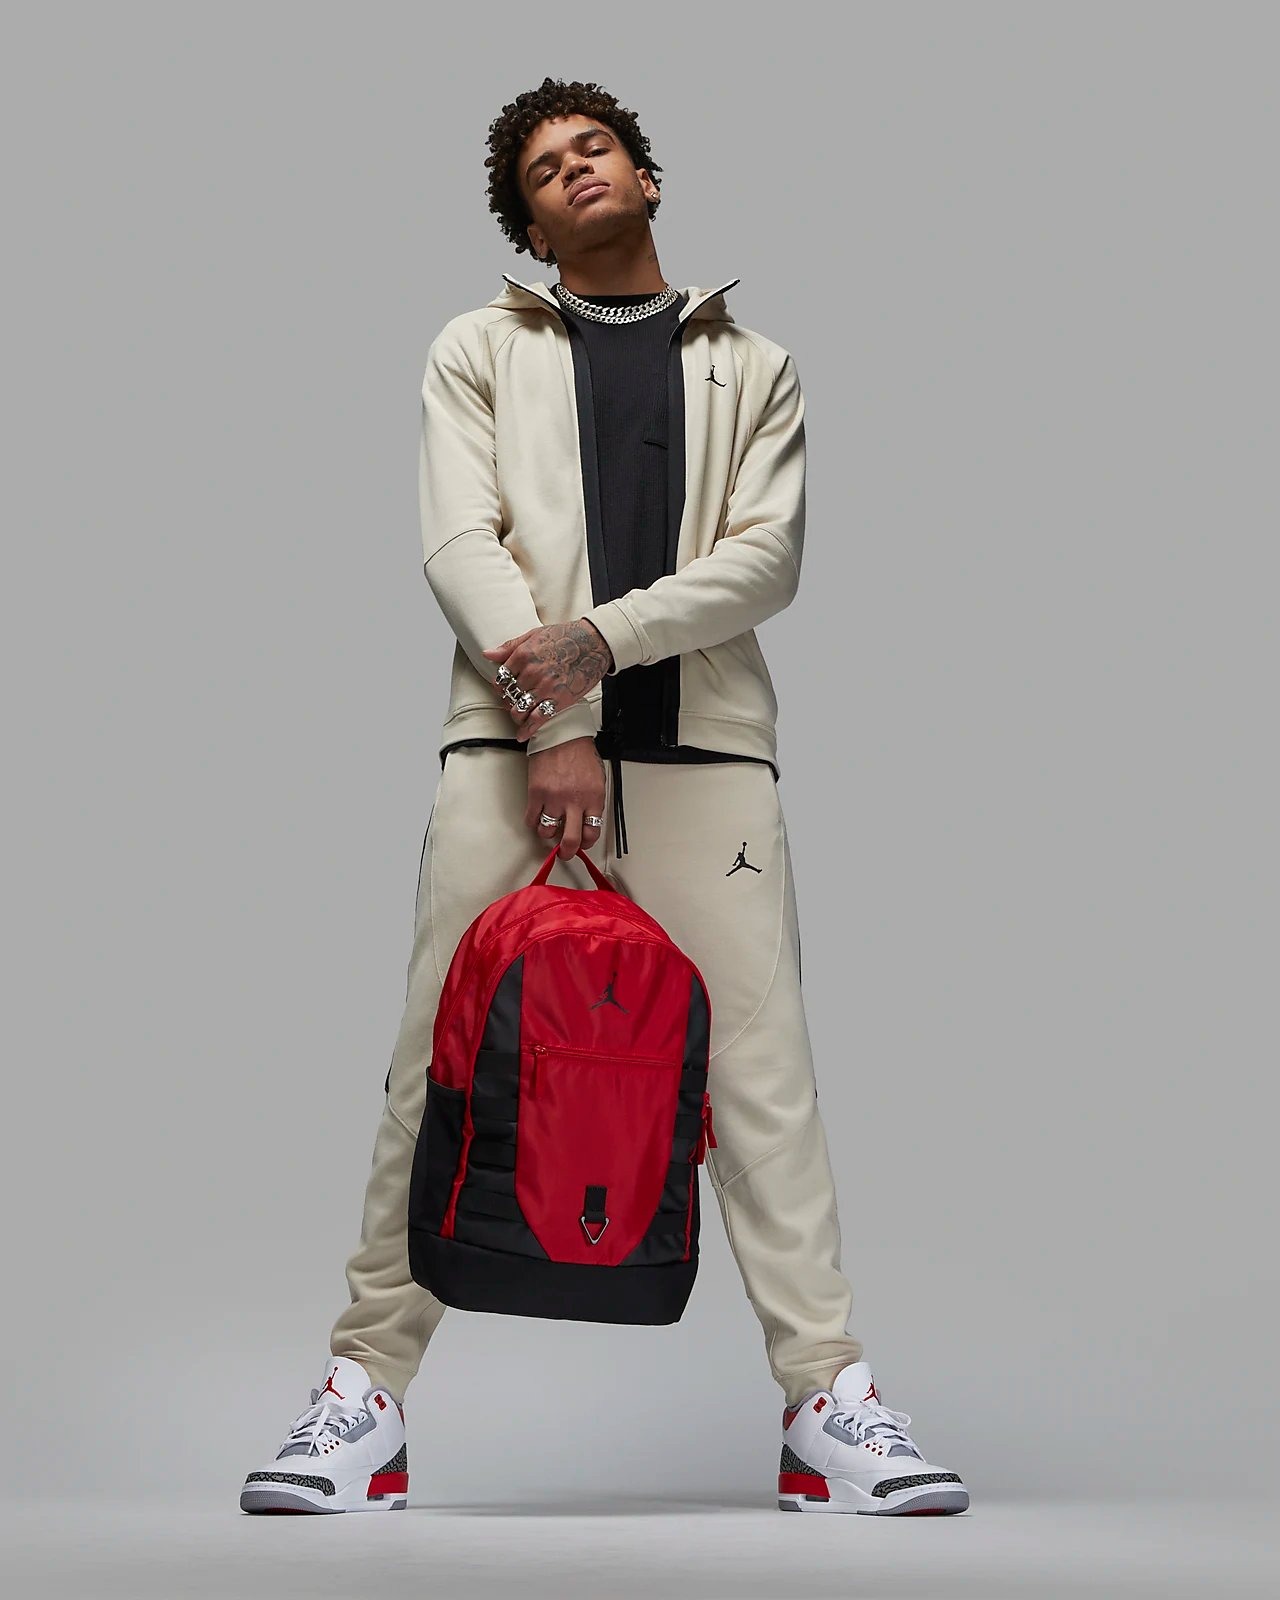 Phụ Kiện Chính Hãng - Balo Jordan Backpack Black /Red - 9A0692-R78